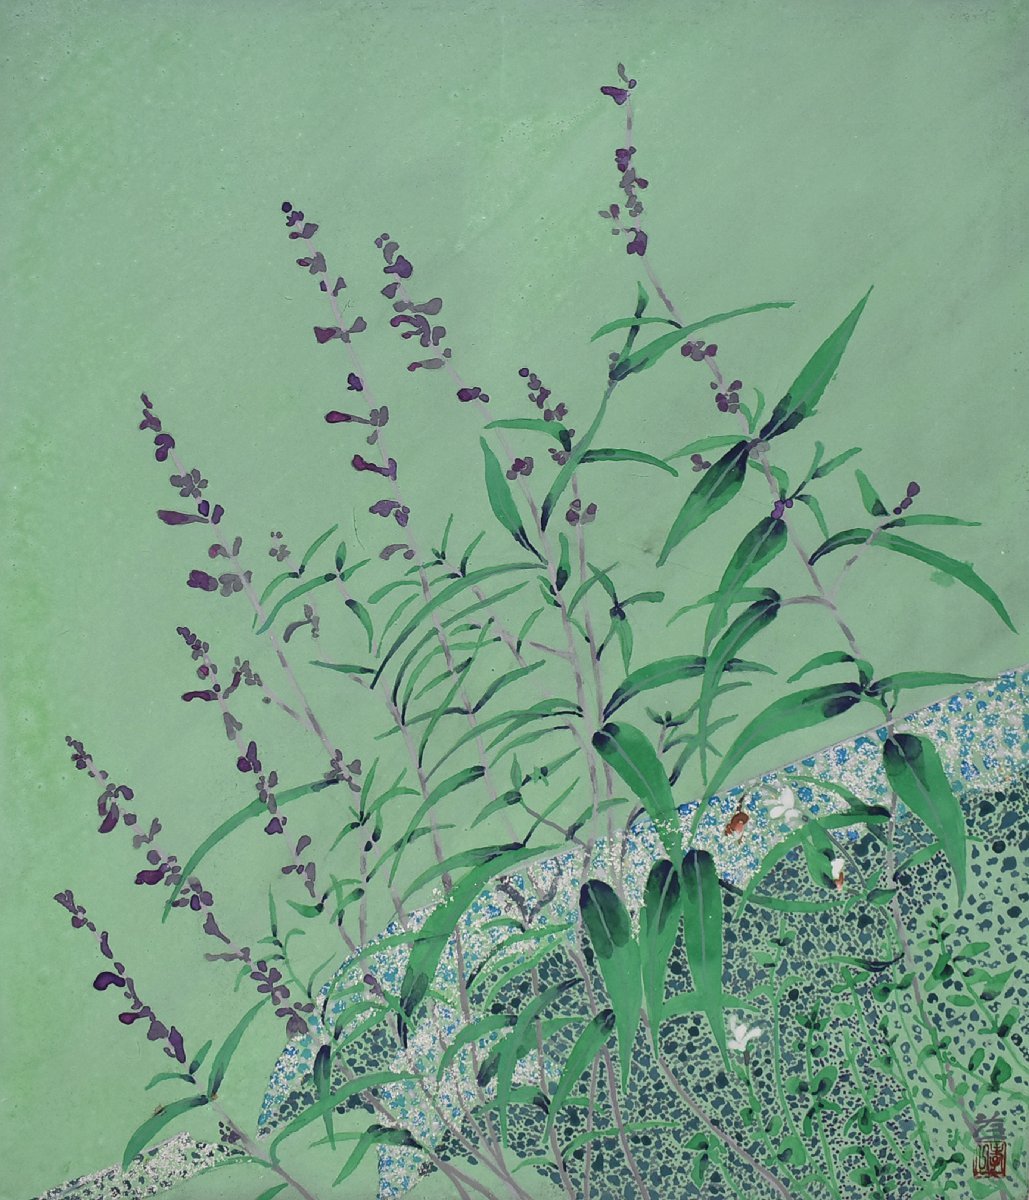 [Galería Seiko - ¡5500 artículos en exhibición! Encuentra tu obra favorita] Popular pintor japonés Koichi Suzuki 10F Rinren con marco, cuadro, pintura japonesa, flores y pájaros, pájaros y bestias